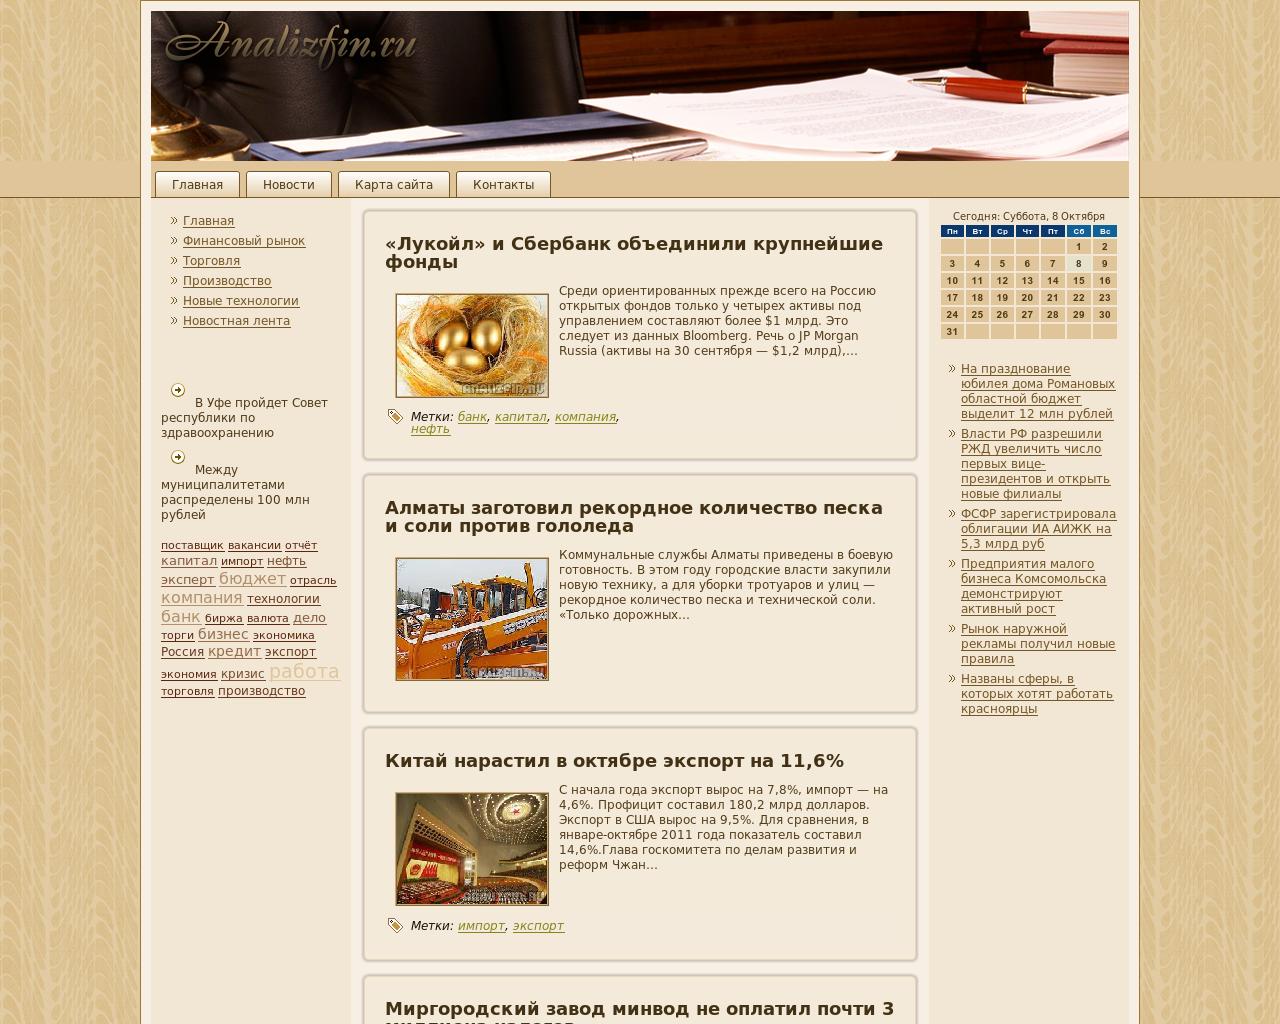 Изображение сайта analizfin.ru в разрешении 1280x1024